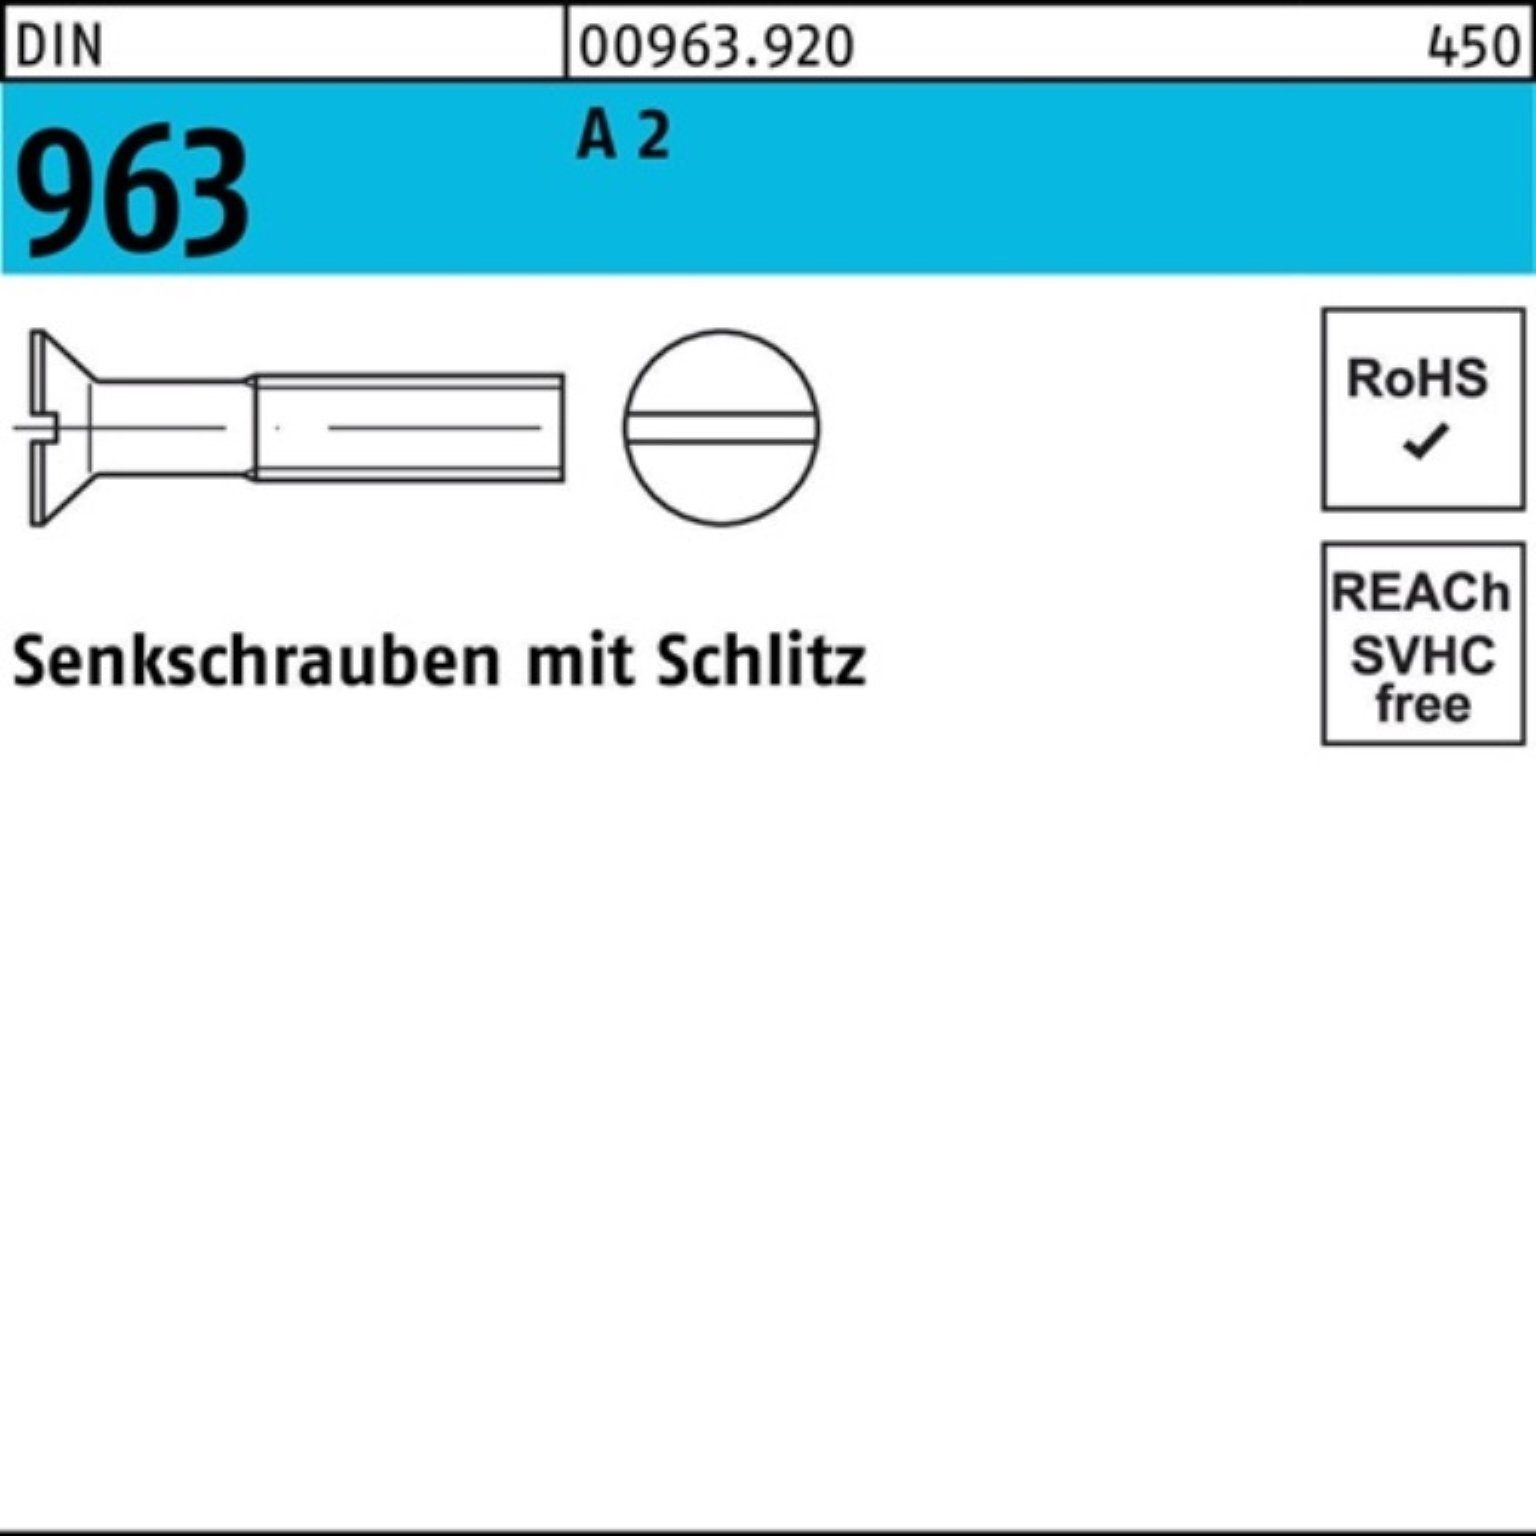 M2x A Reyher DIN Schlitz Stück Senkschraube 1000 Senkschraube 963 2 1000er 6 DIN Pack 963